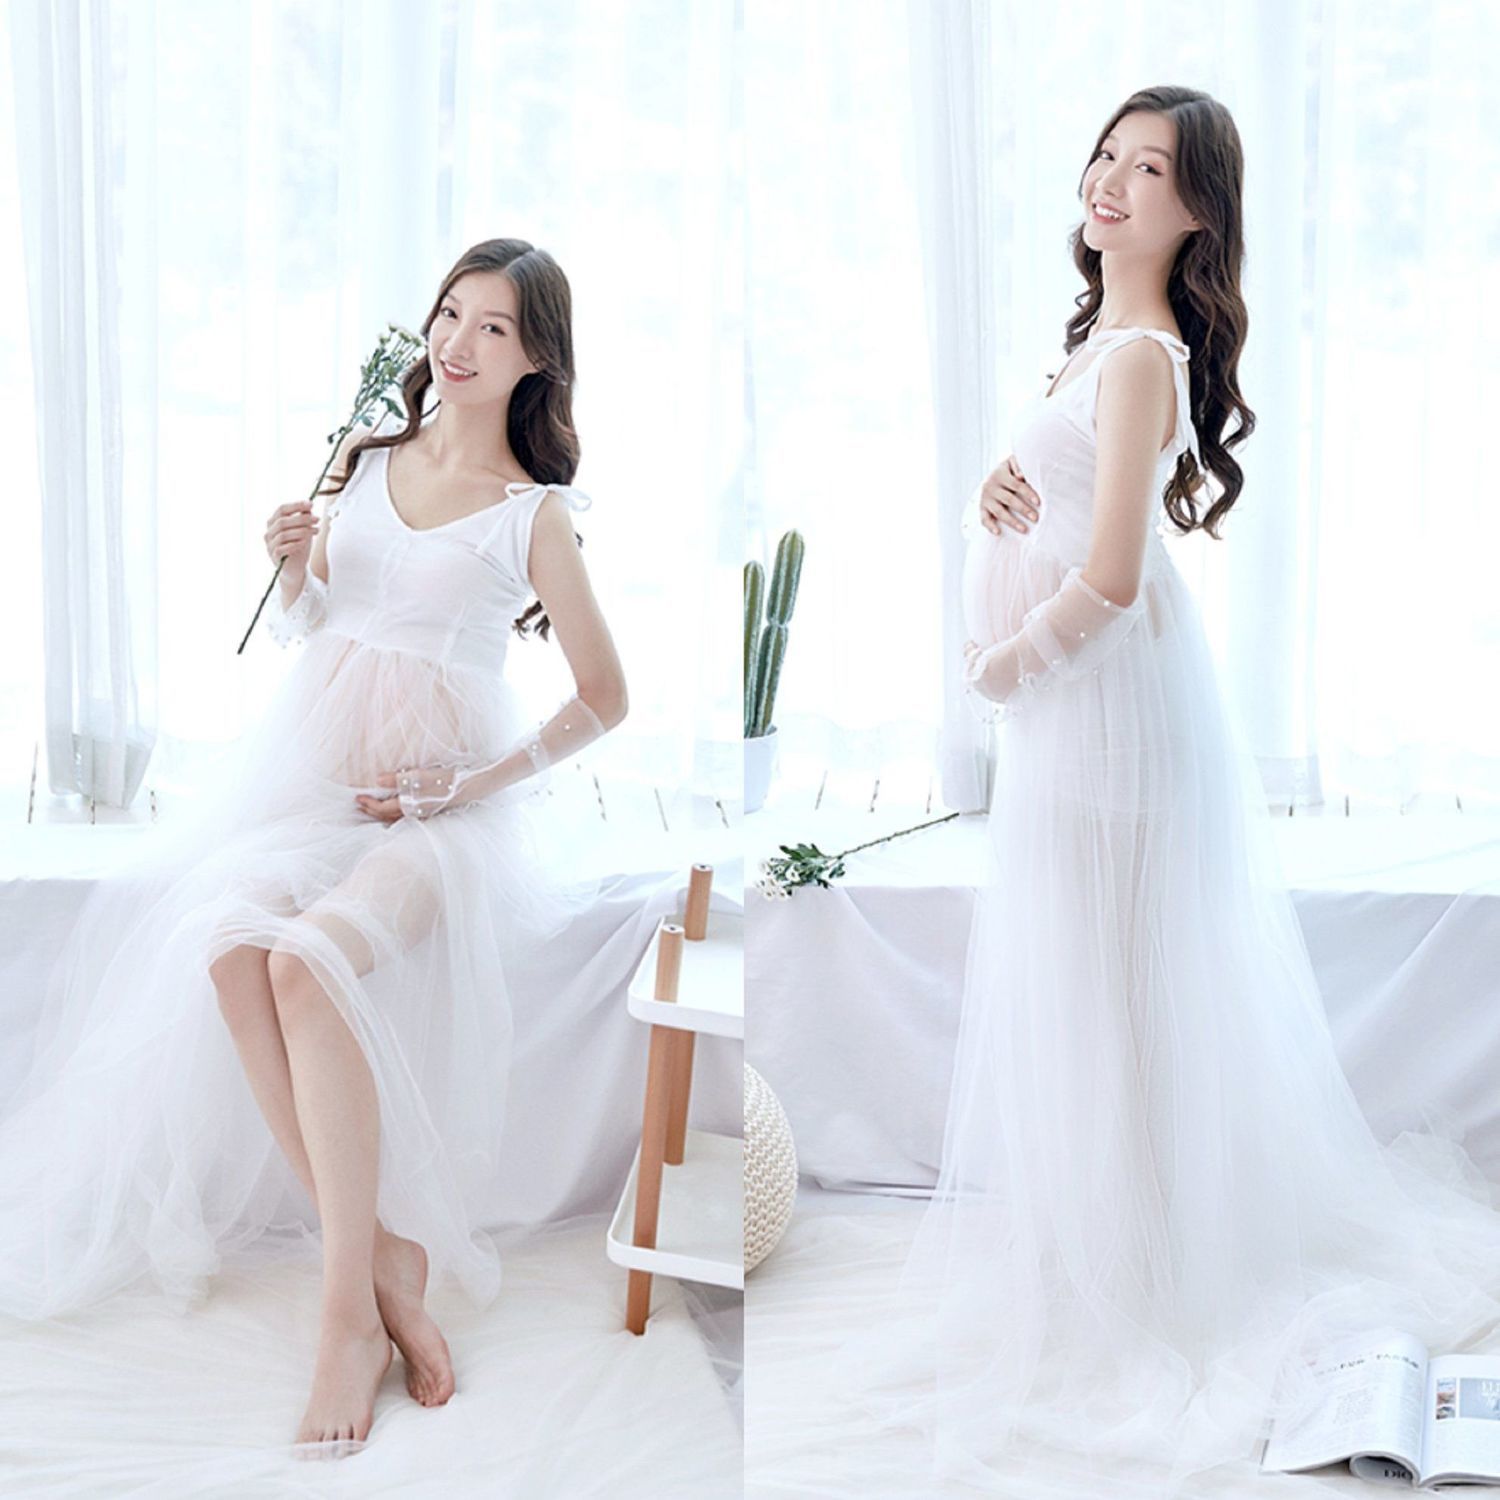 孕妇大肚照服装白纱裙孕妇照服装新款韩版甜美妈咪拍艺术照衣服